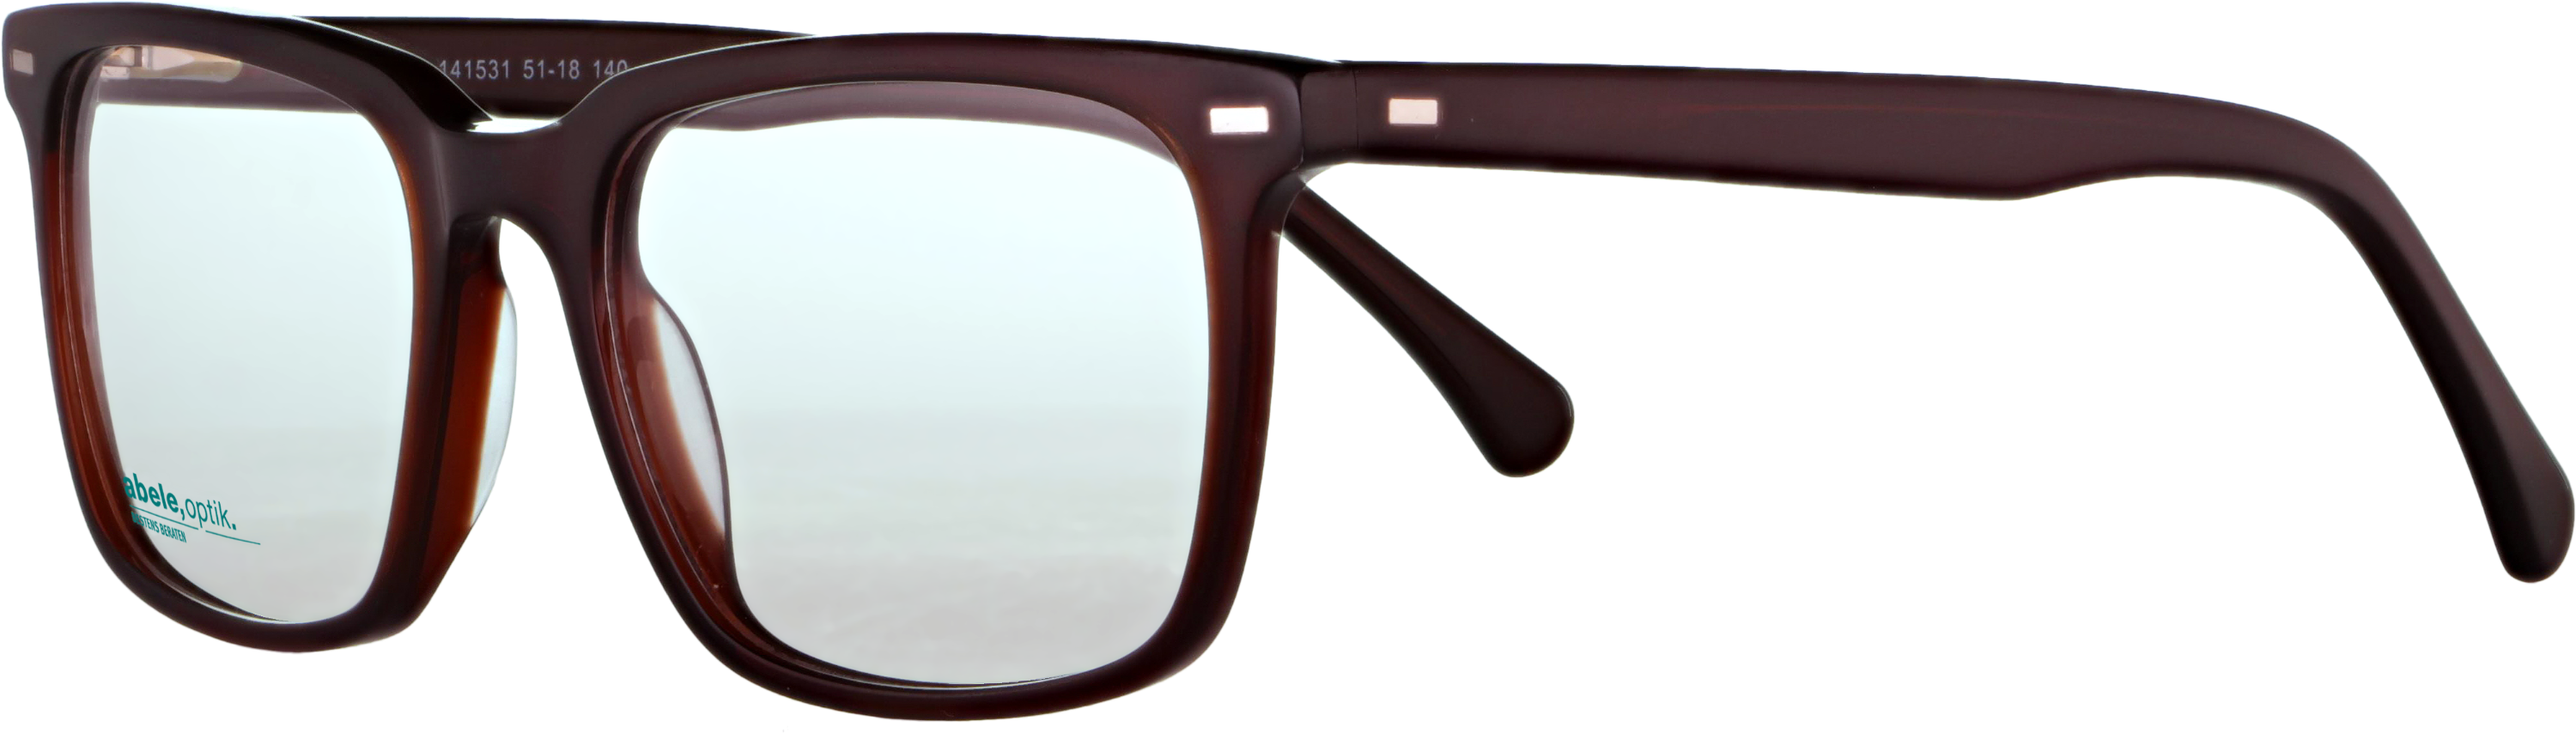 Das Bild zeigt die Korrektionsbrille 141531 von der Marke Abele Optik in dunkelbraun.